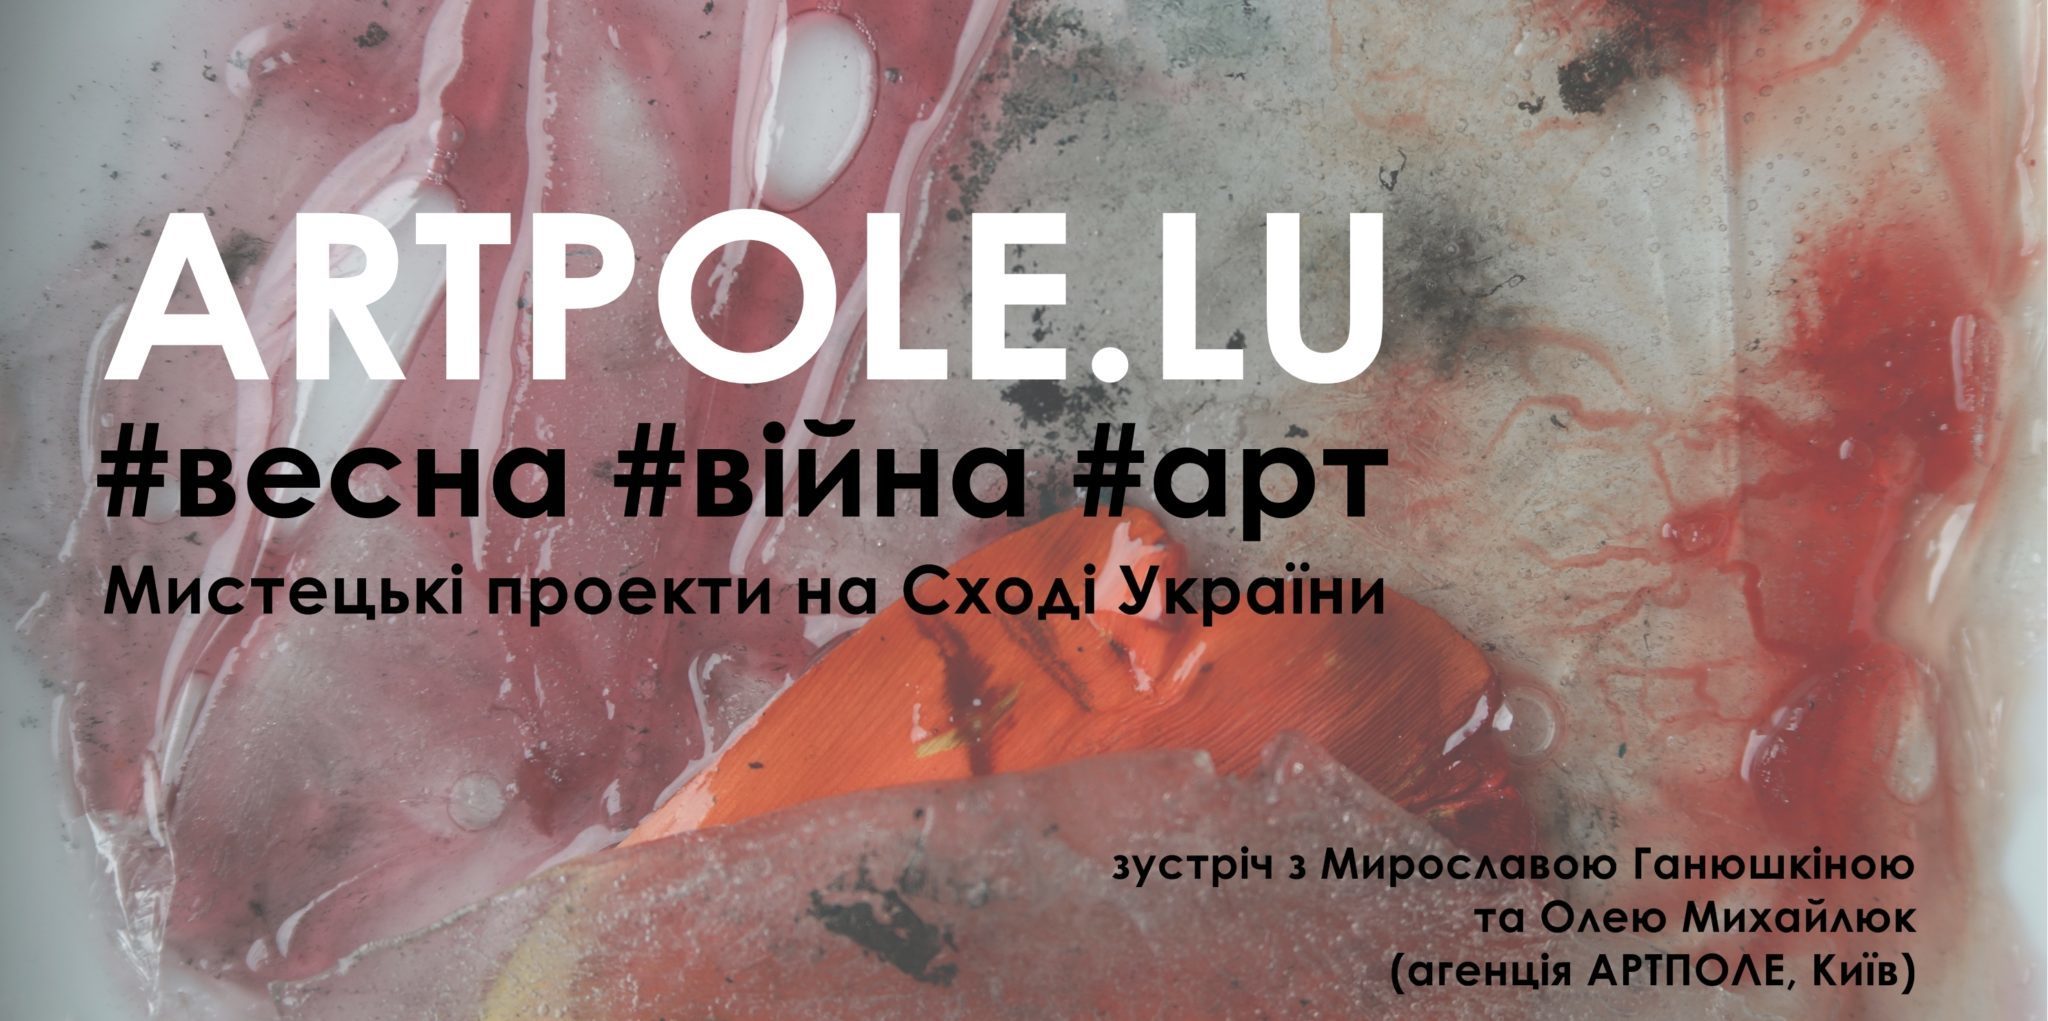 ARTPOLE.LU #весна #війна #арт — Mистецькі проекти на Сході України